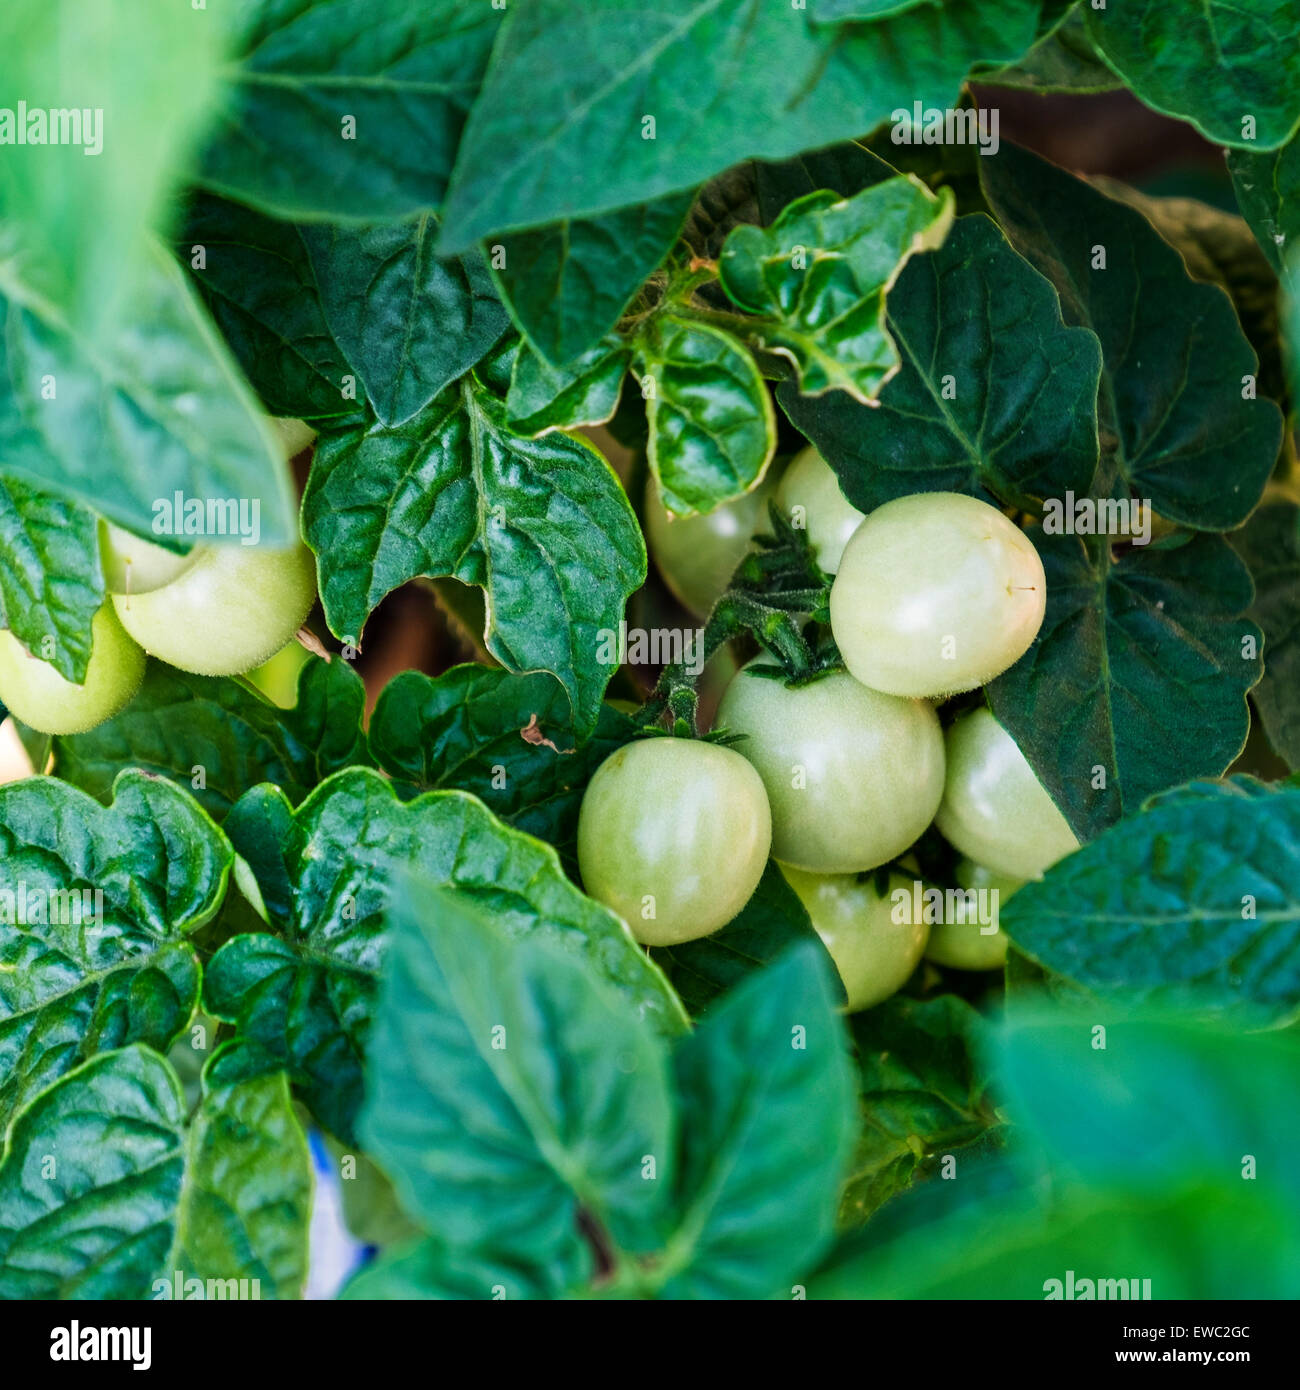 Un plant de tomate avec de nouvelles petites tomates vertes, Solanum lycopersicum. USA. Accueil cultivé et organique. Banque D'Images